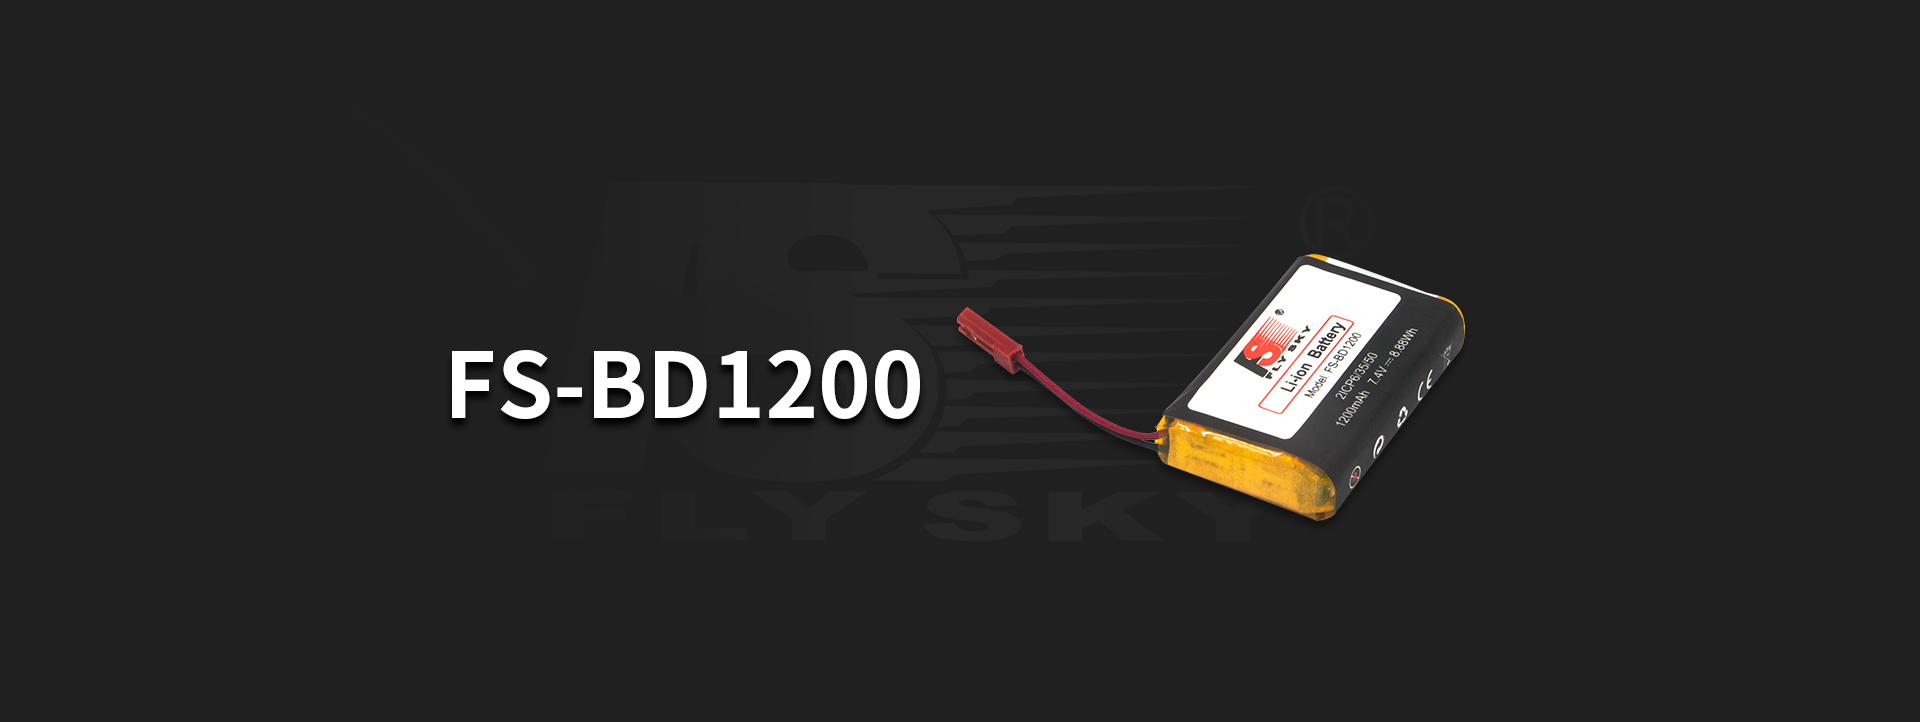 FS-BD1200